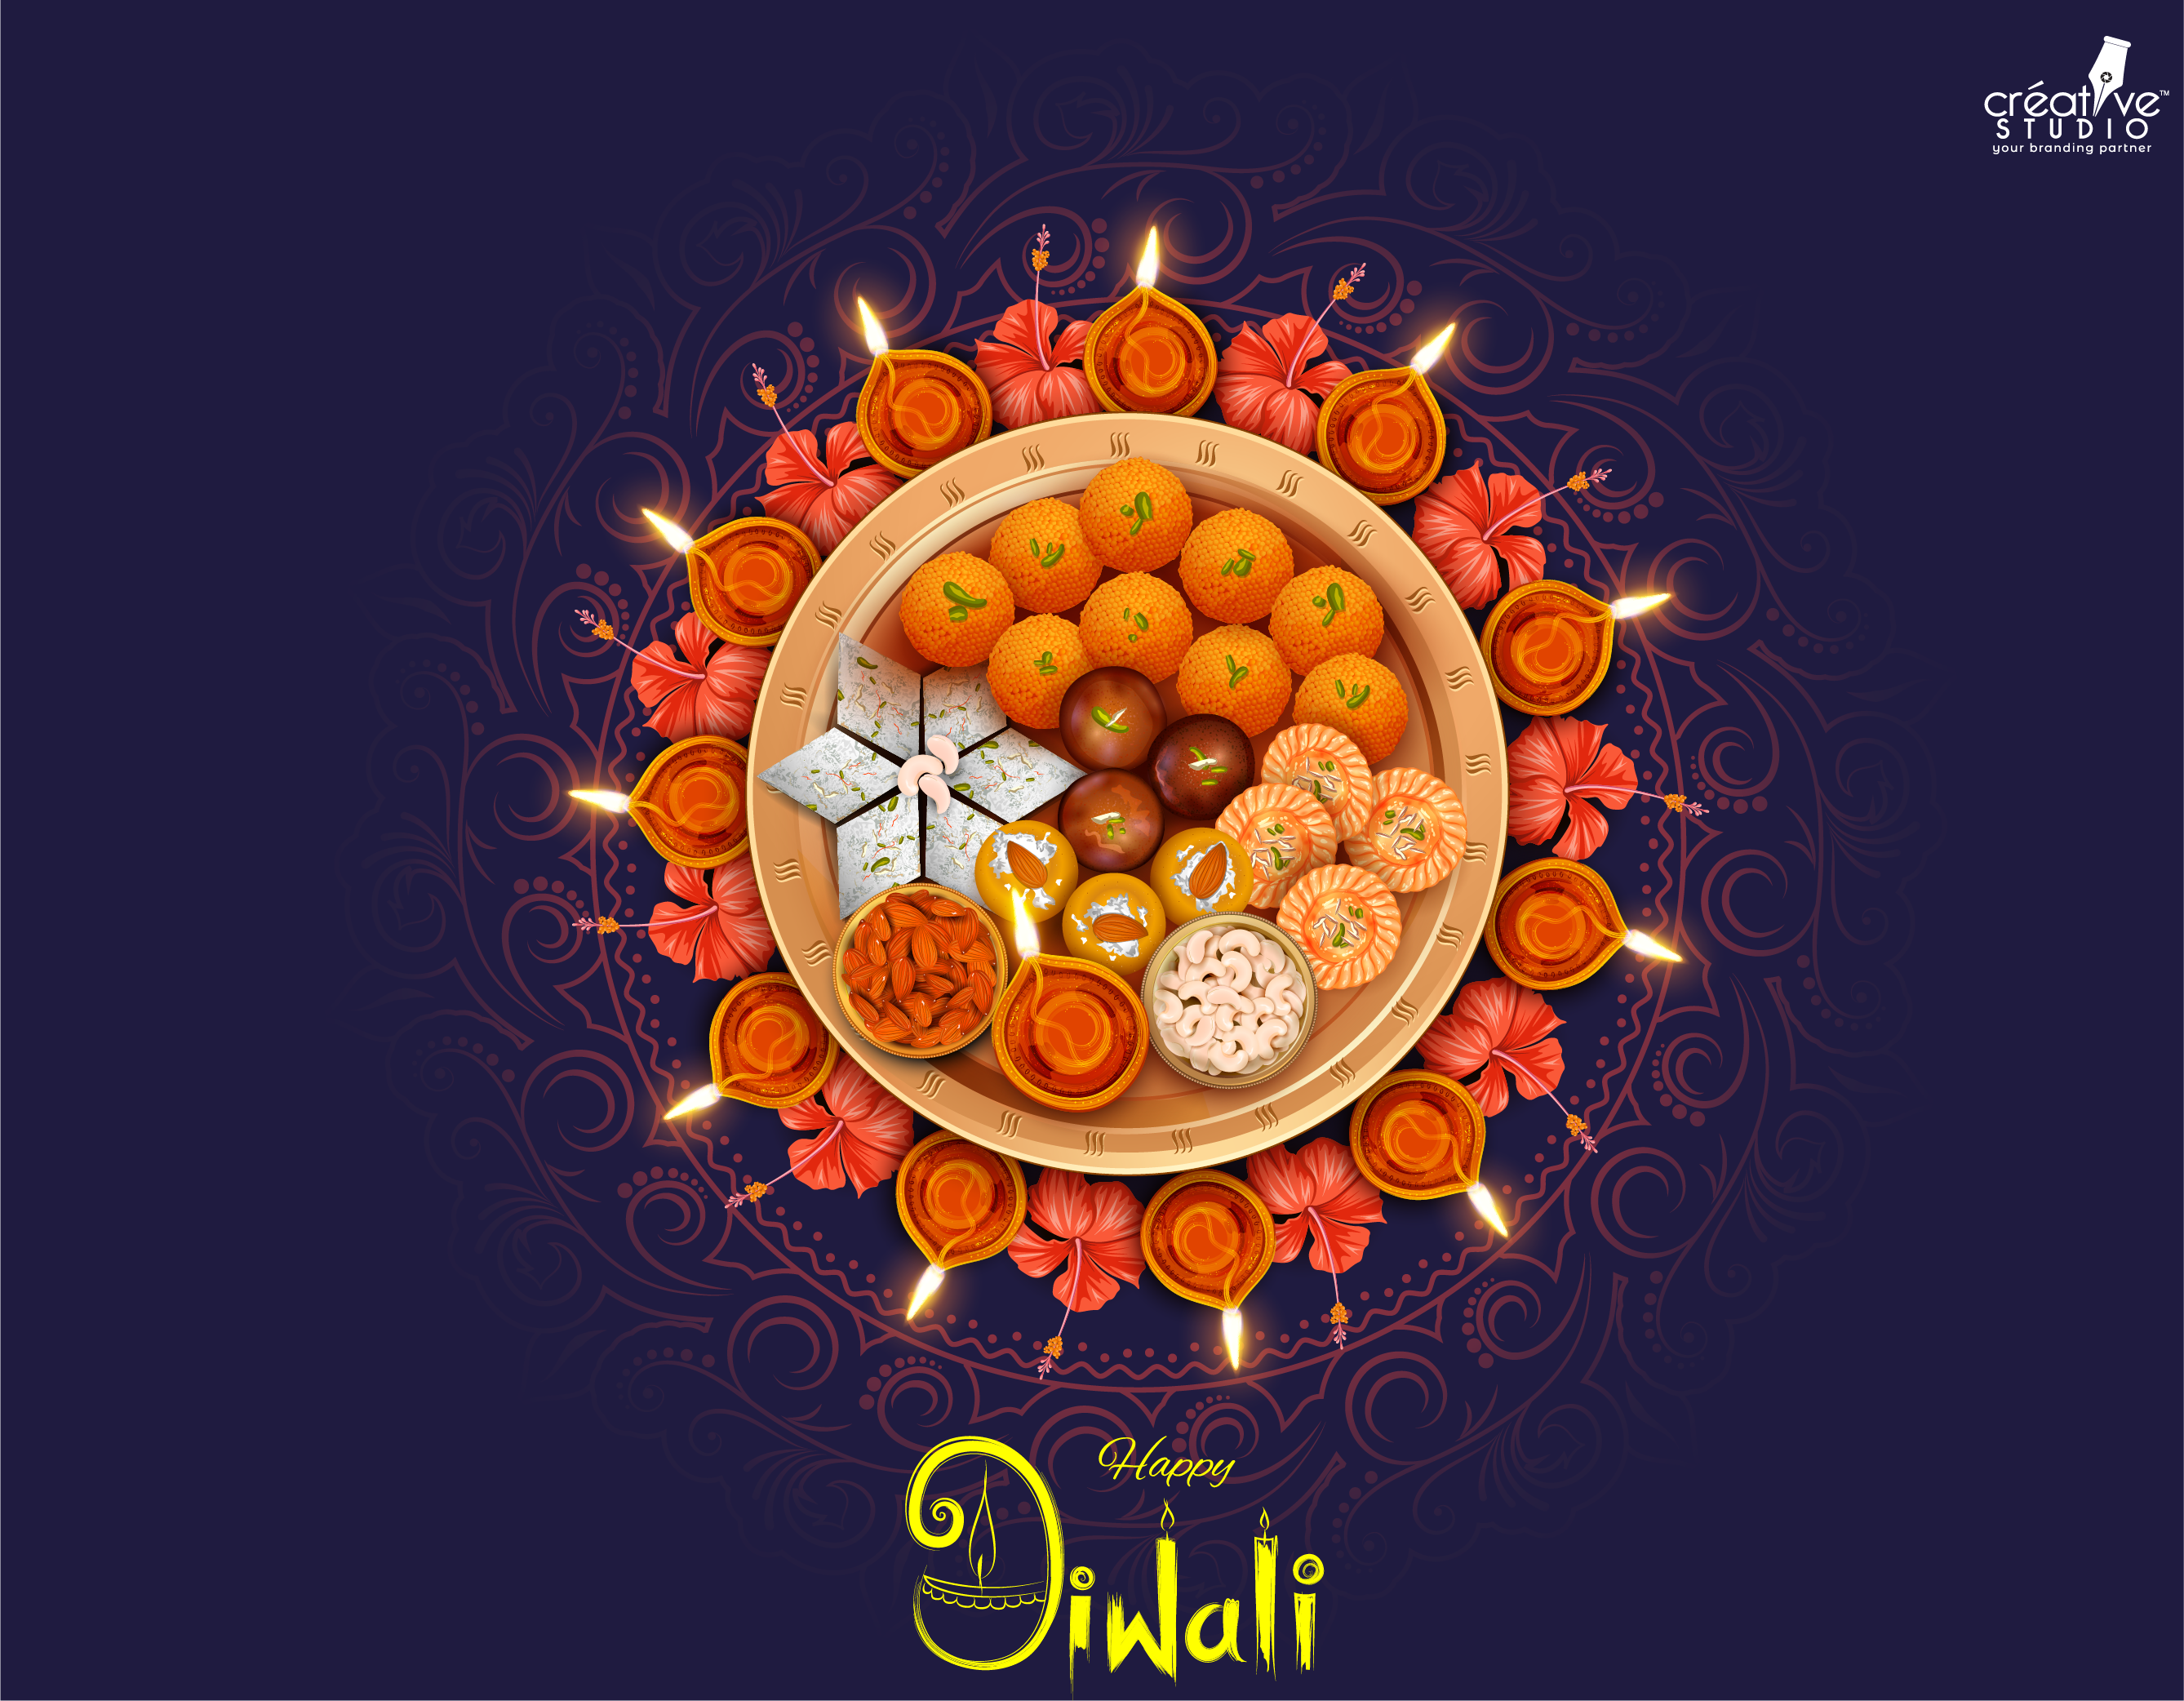 diwali 01 - Happy Diwali